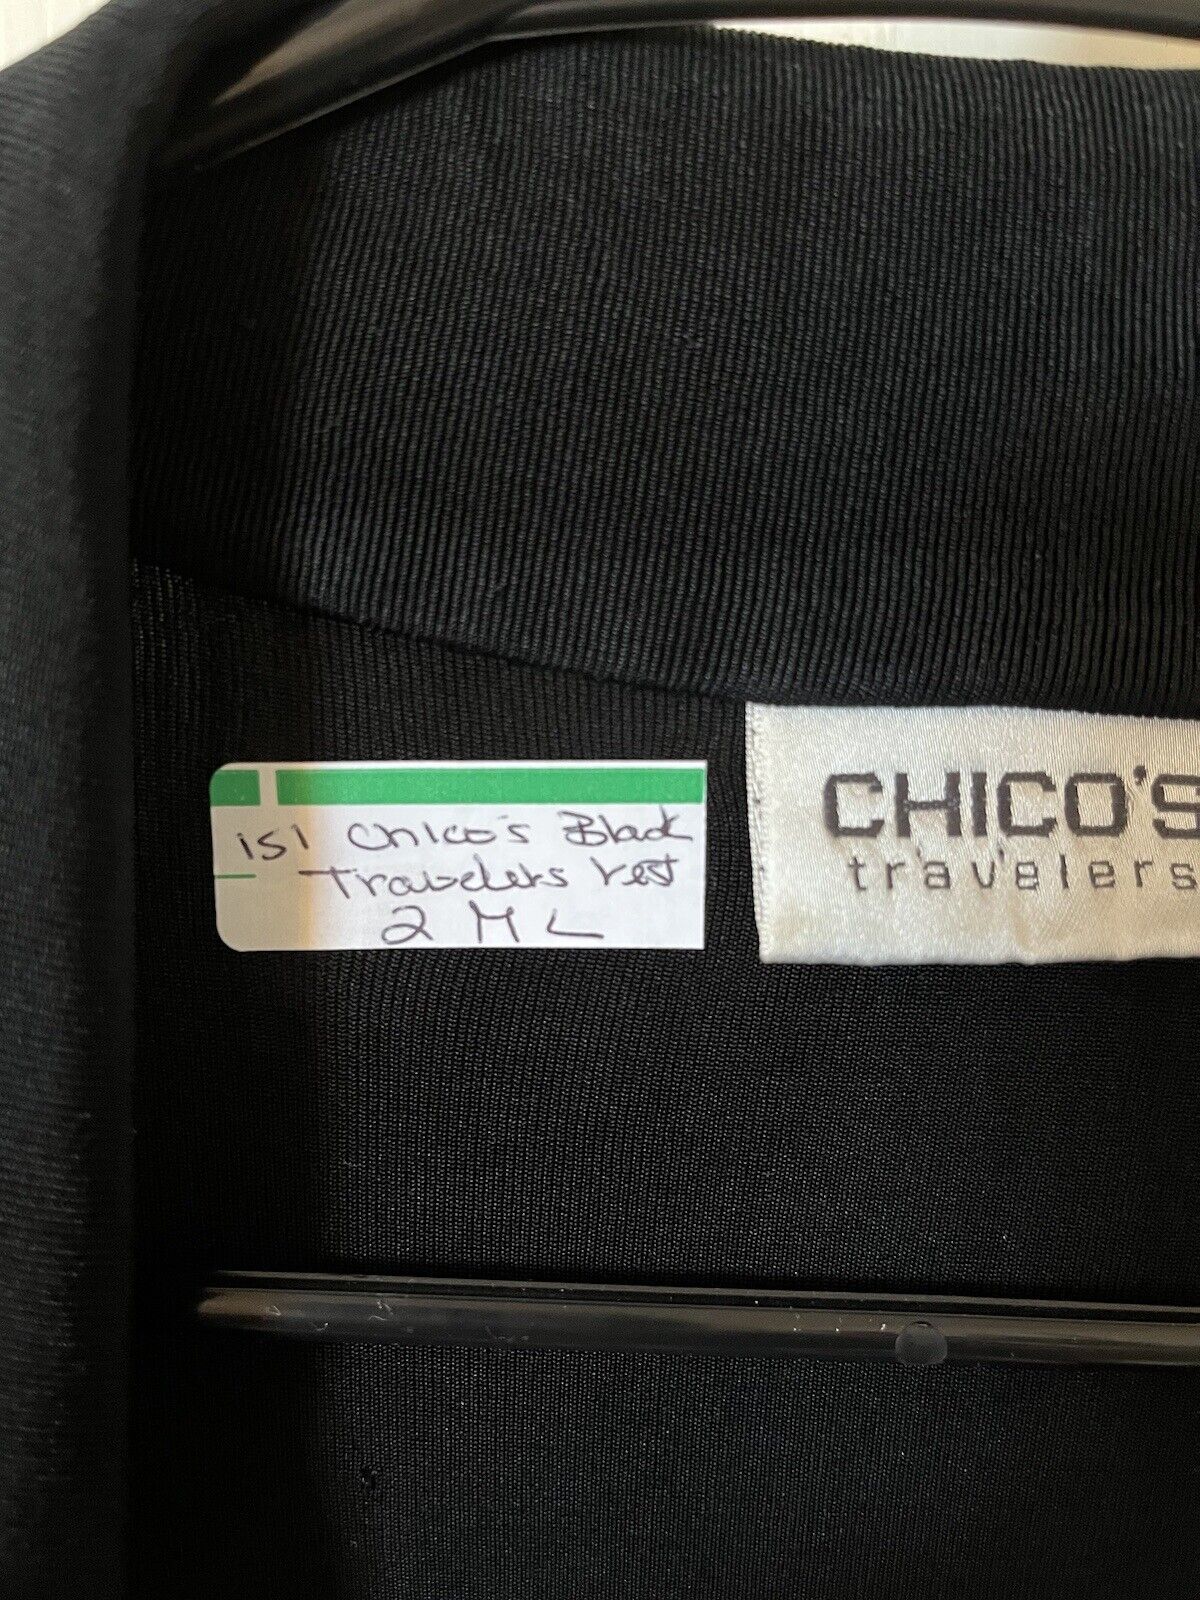 Chicos Black Travelers Longer Vest 2 M L - image 7